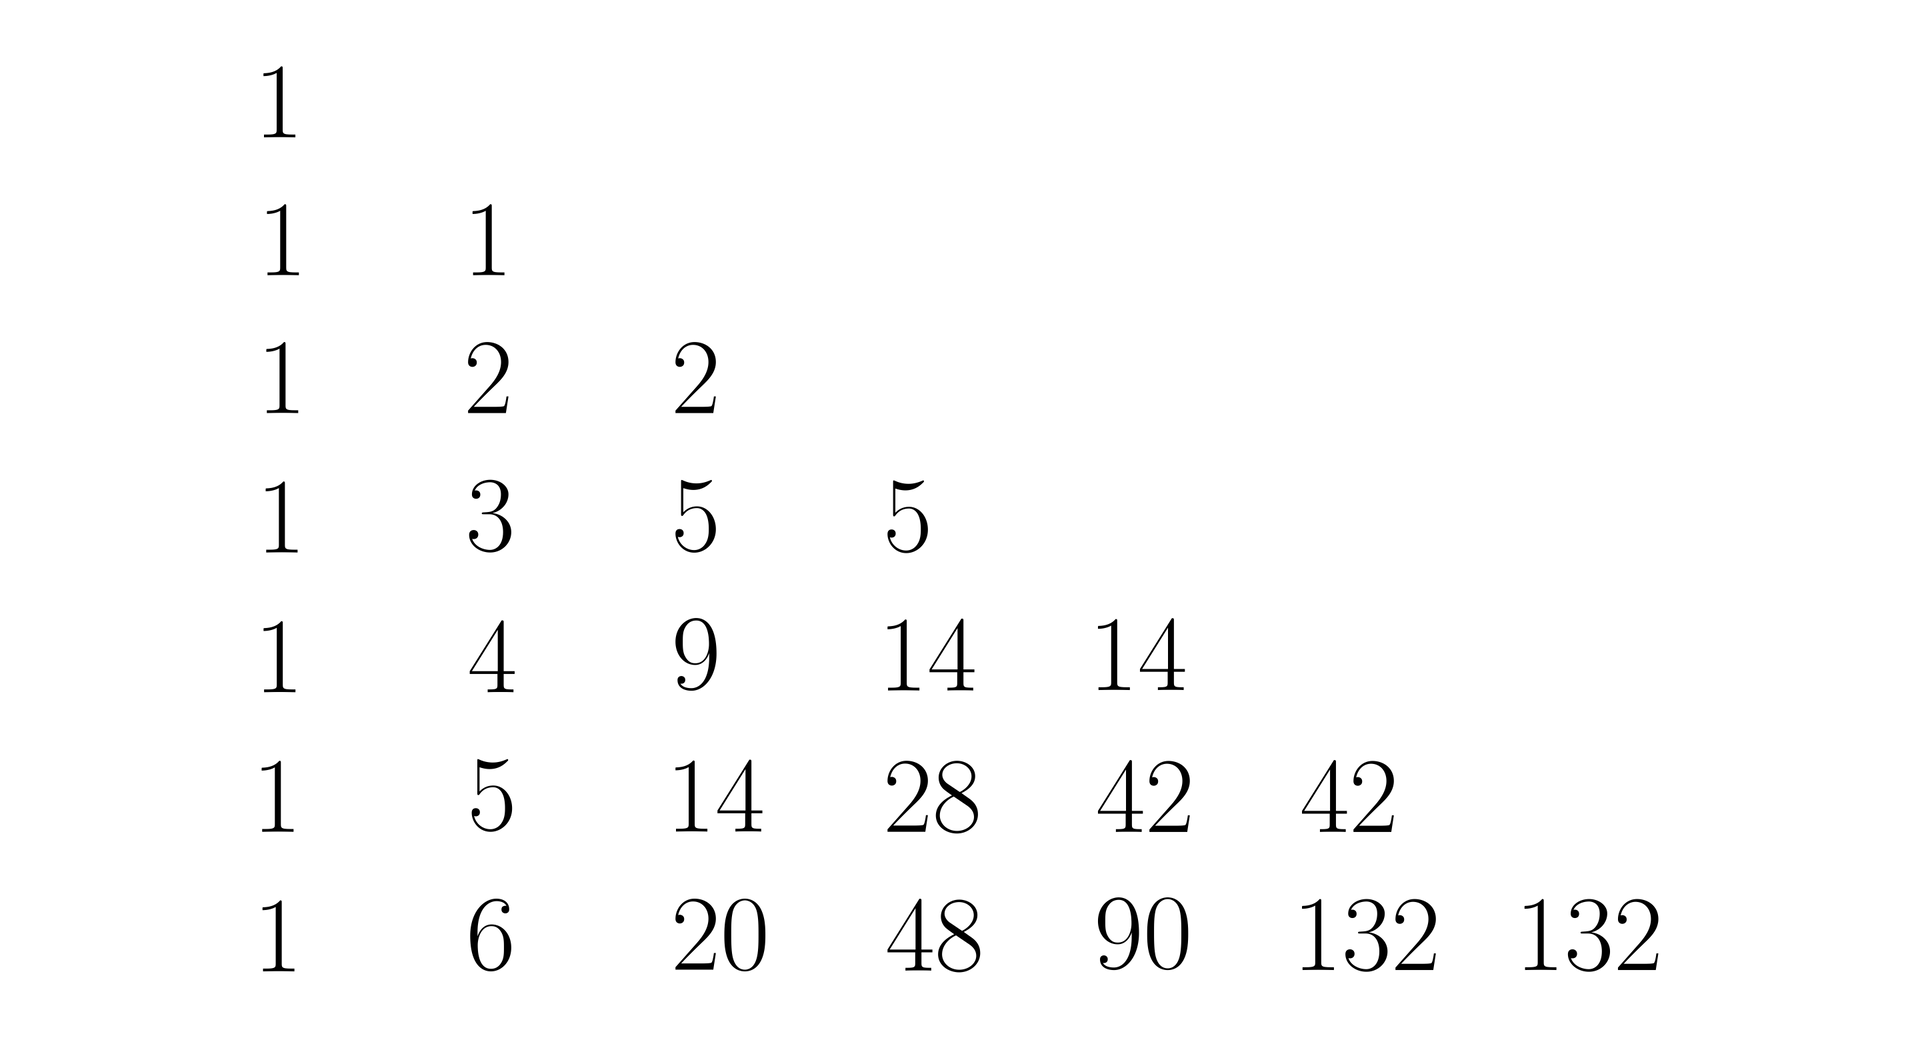 Ilustracja przedstawia trójkąt prostokątny zbudowany z siedmiu kolumn cyfr. Pierwsza kolumna od lewej będąca pionową przyprostokątną trójkąta składa się z siedmiu jedynek, druga kolumna, patrząc od góry składa się z cyfr:1, 2, 3, 4, 5, 6, trzecia kolumna to kolejno: 2, 5, 9, 14, 20. Czwarta kolumna to: 5, 14, 28, 48, piąta kolumna to: 14, 42, 90, szósta kolumna: 42 i 132 oraz ostatnia kolumna- siódma to liczba sto trzydzieści dwa.